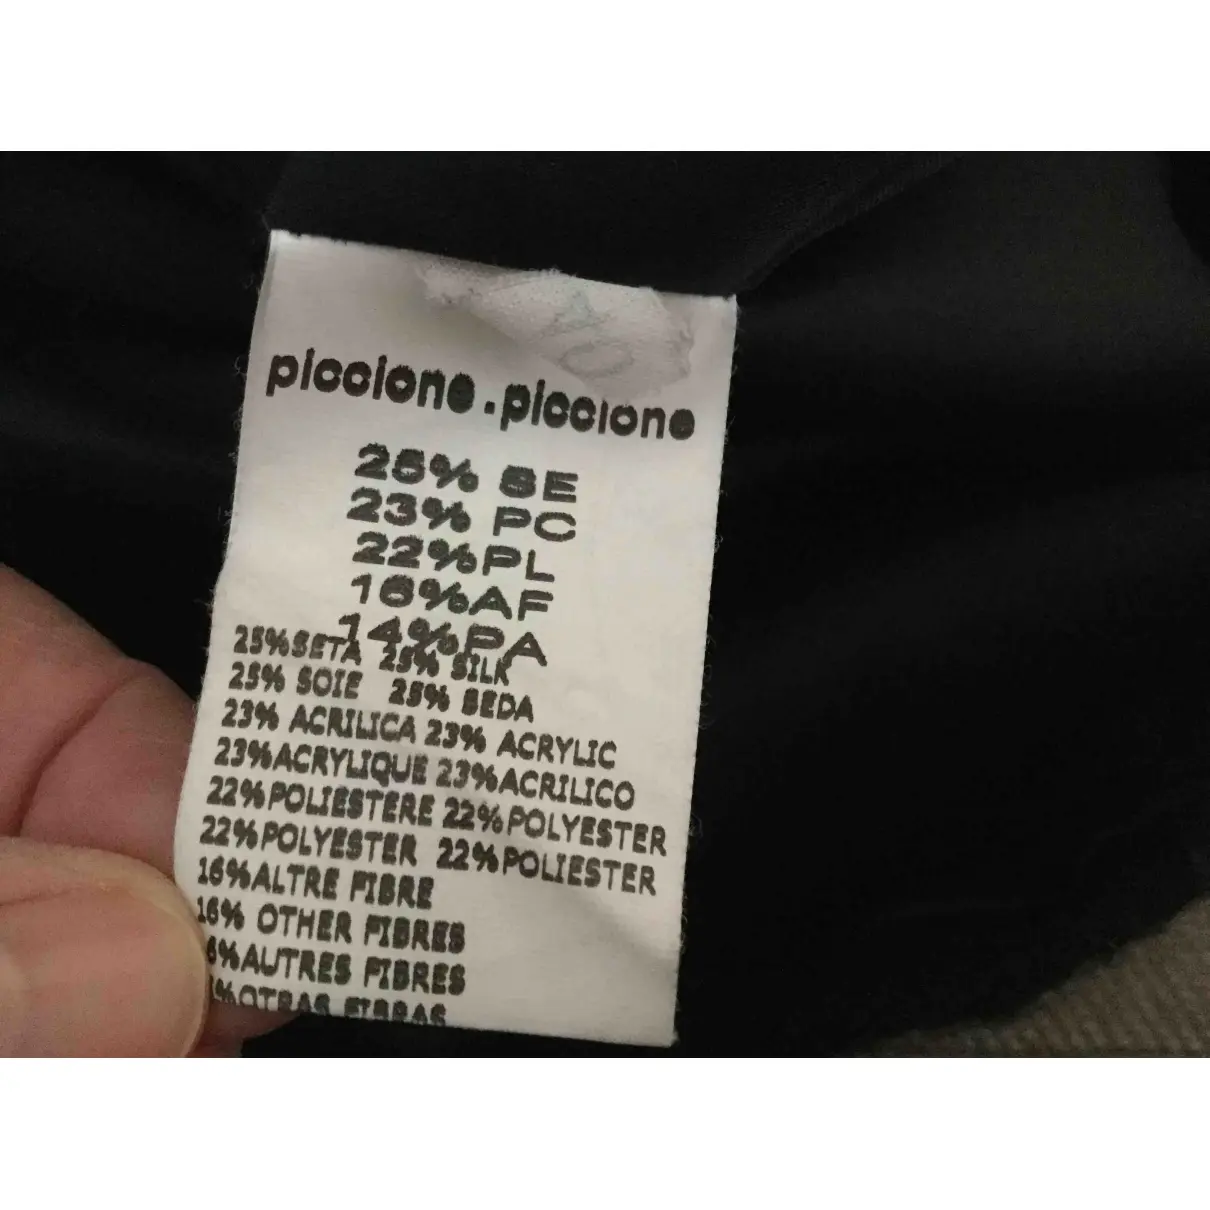 Mid-length skirt Piccione.Piccione